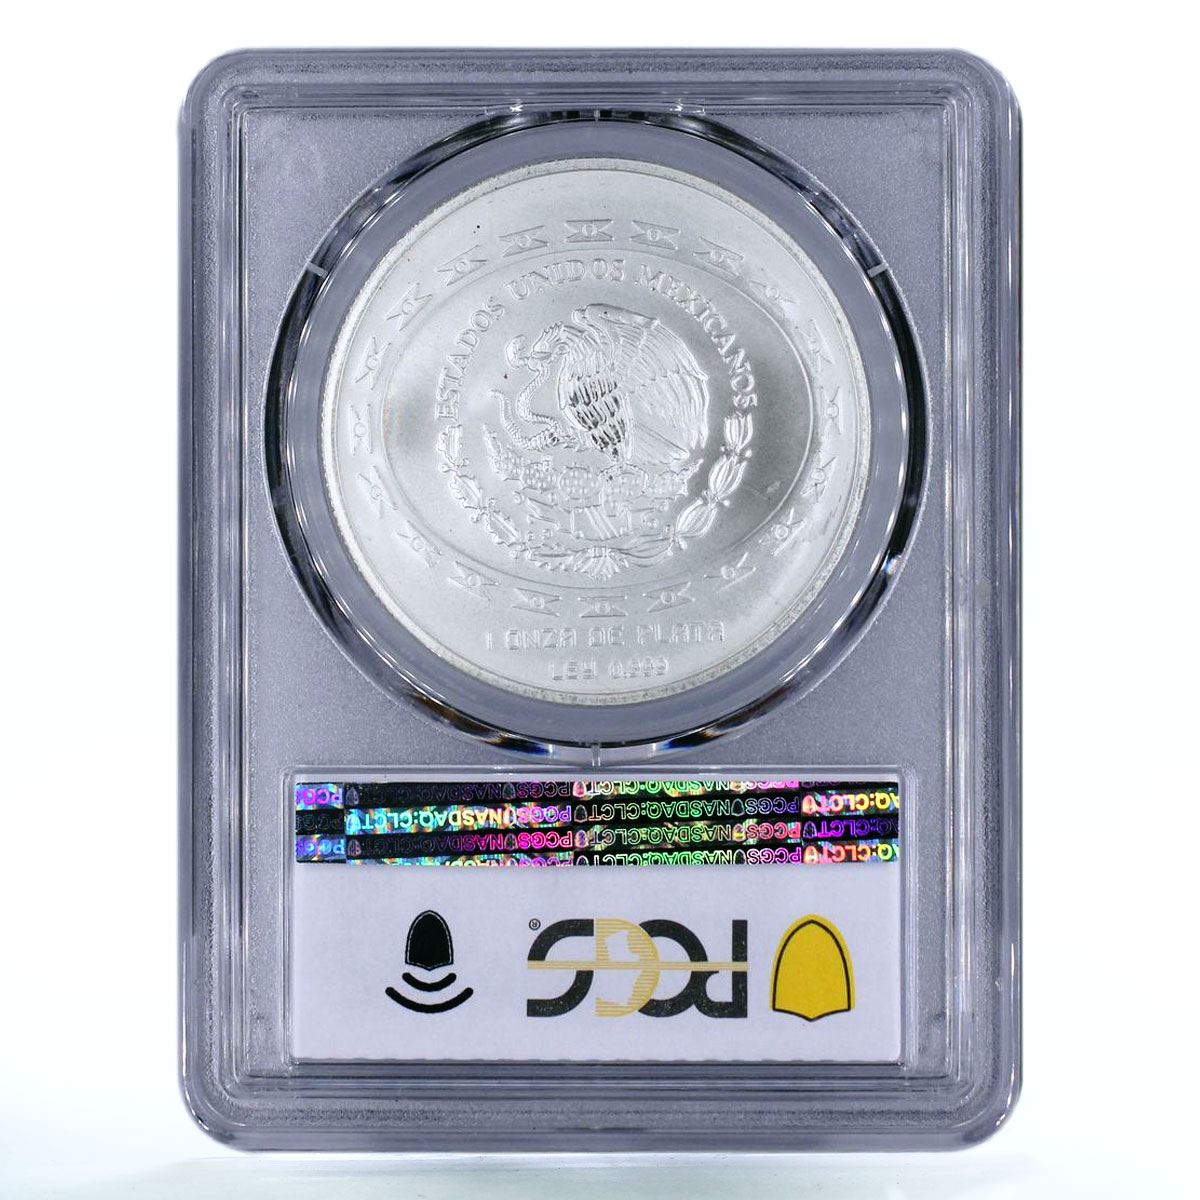 Mexico 5 pesos Precolombina Jugador de Pelota Statue MS67 PCGS silver coin 1997